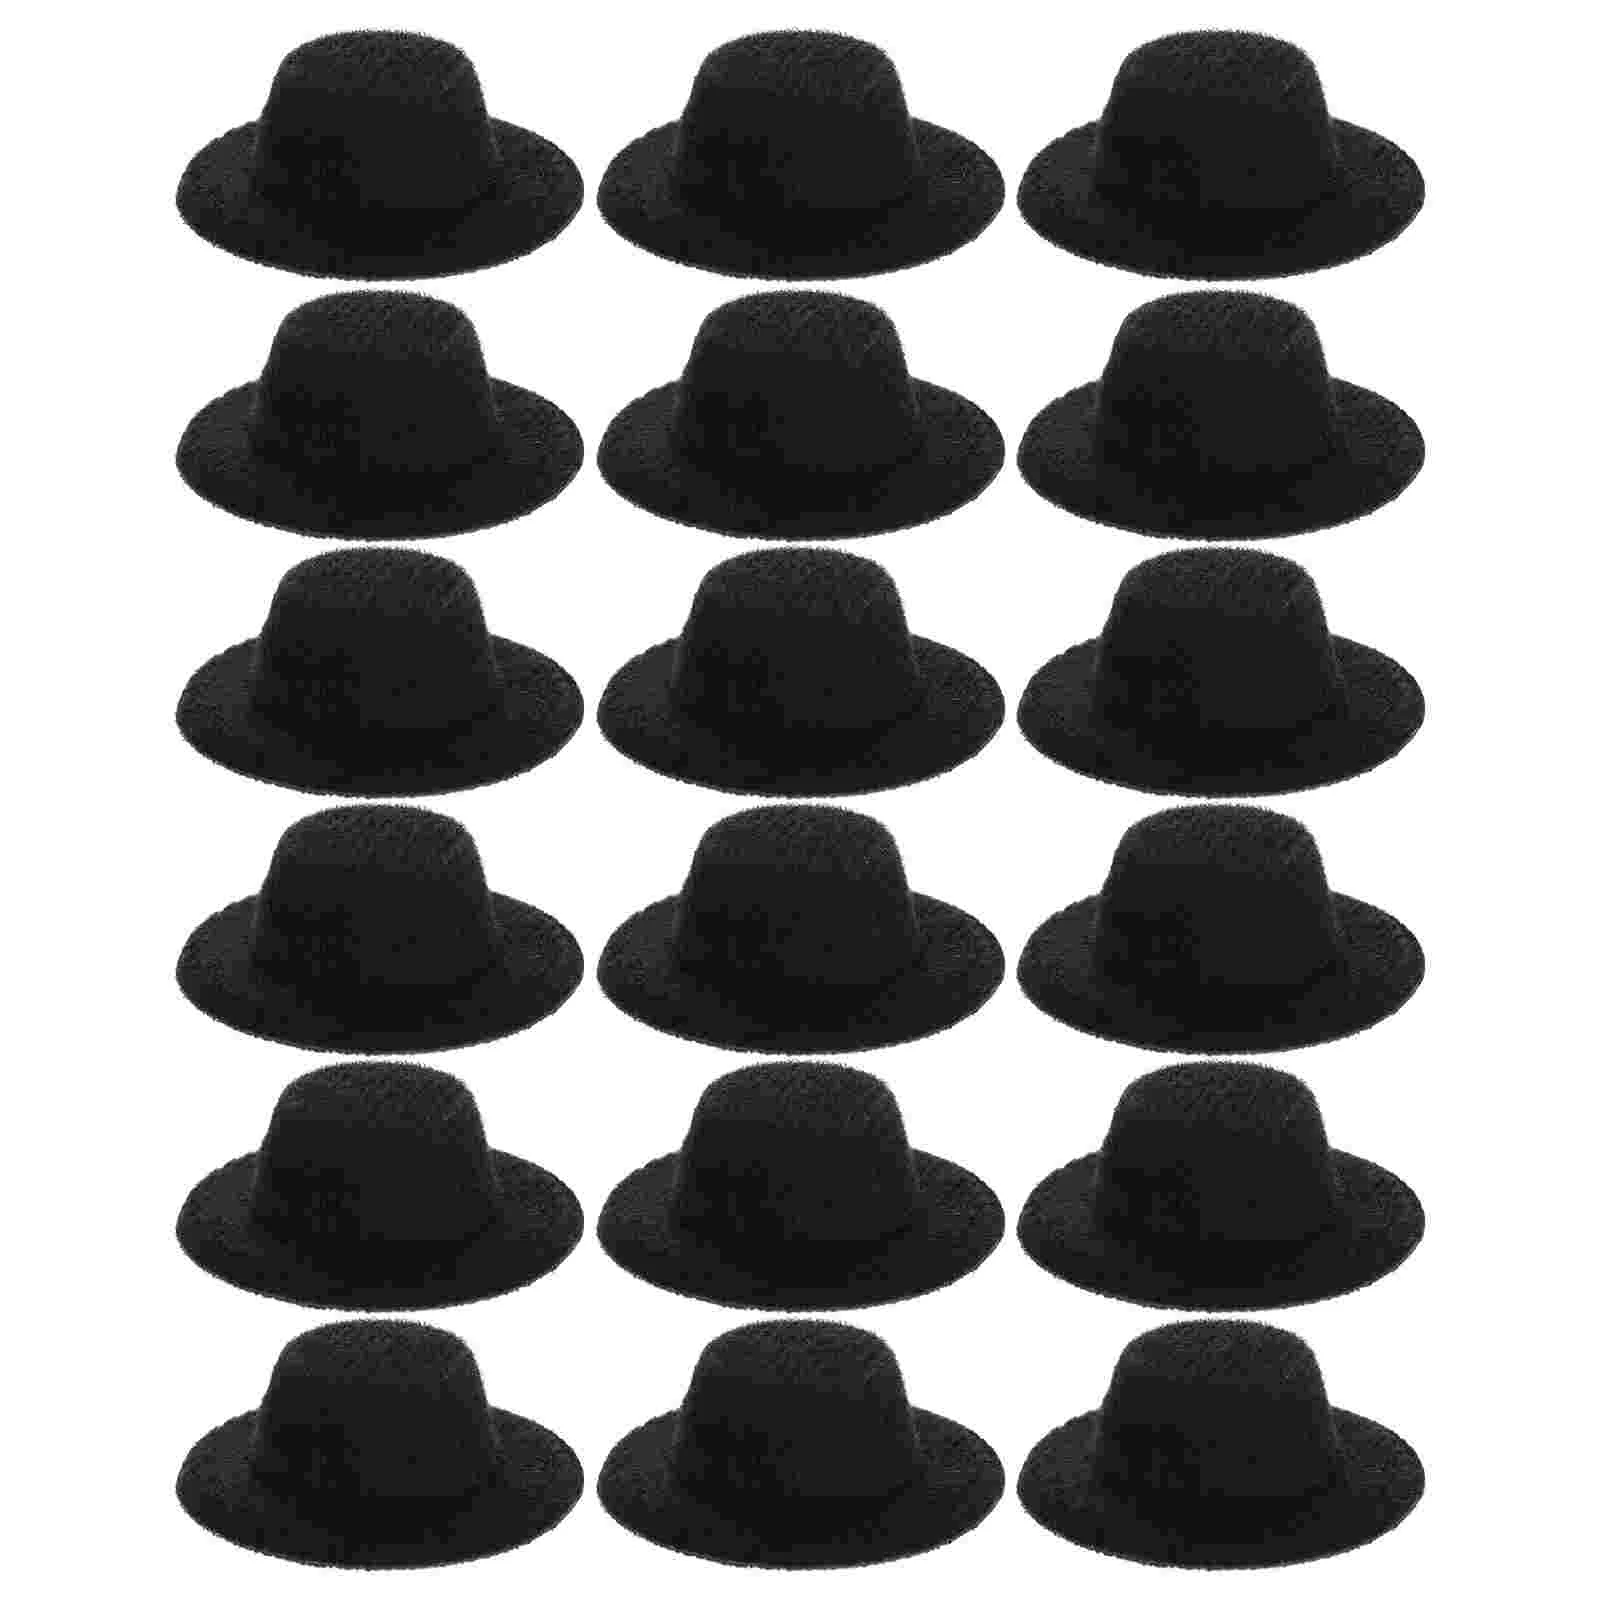 

Hats Mini Hat Miniature Formal Diy Black Crafts Tiny Party Craft Caps Cowboy Accessories Magician Snowman Felt Decoration